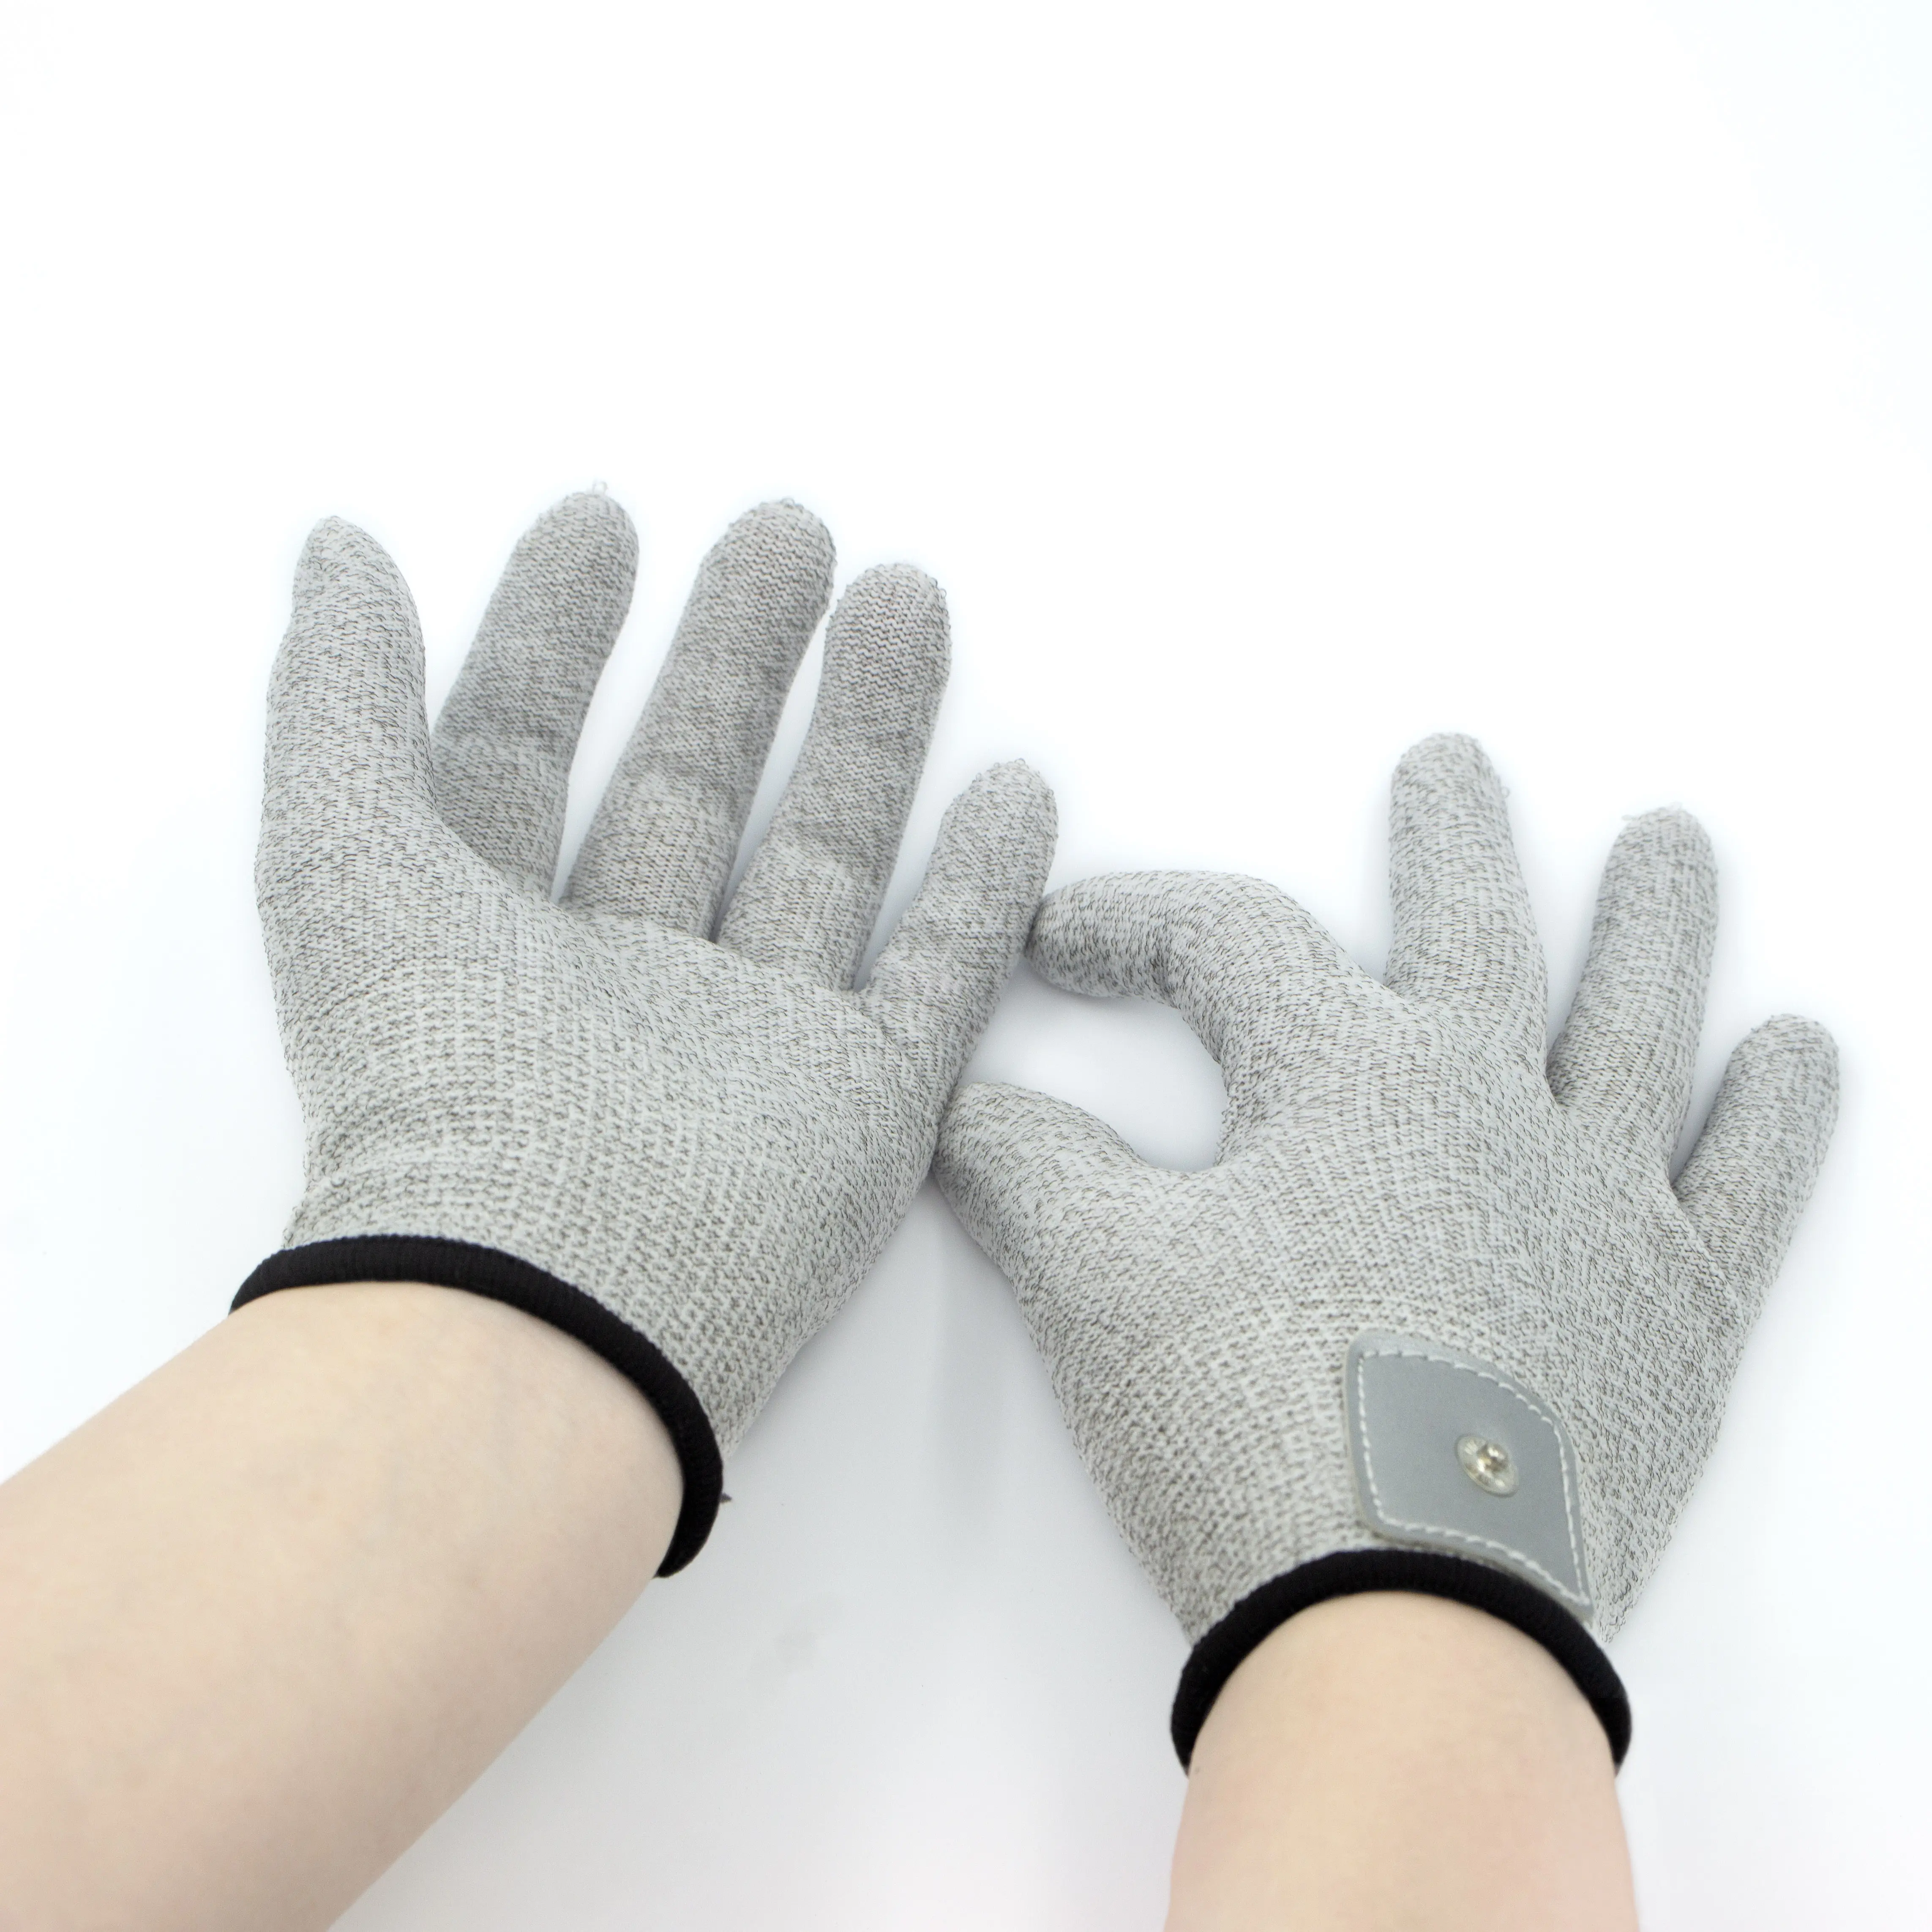 Heißer Verkauf Silber elektrische leitfähige Elektroden massage handschuhe für zehn ems Gerät